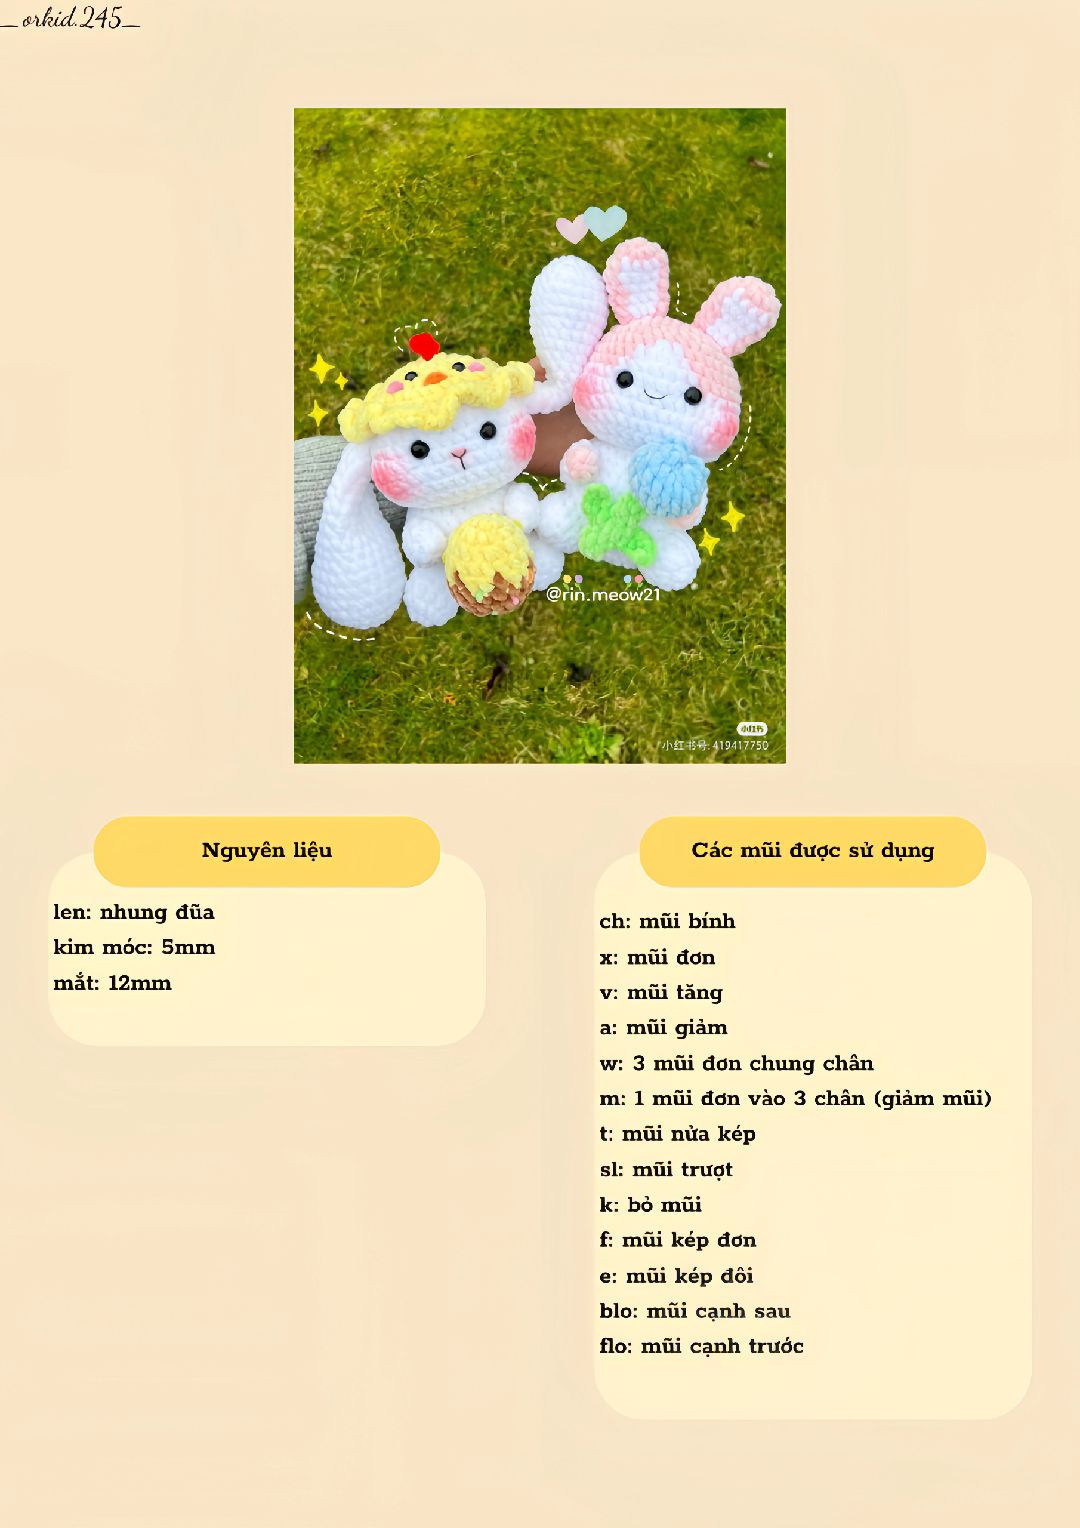 Mẫu móc 2in1 - Hopper và Chippi the Easter Bunny, mẫu móc phục sinh, chú thỏ hoa tulip, đồ chơi mềm, dễ thương